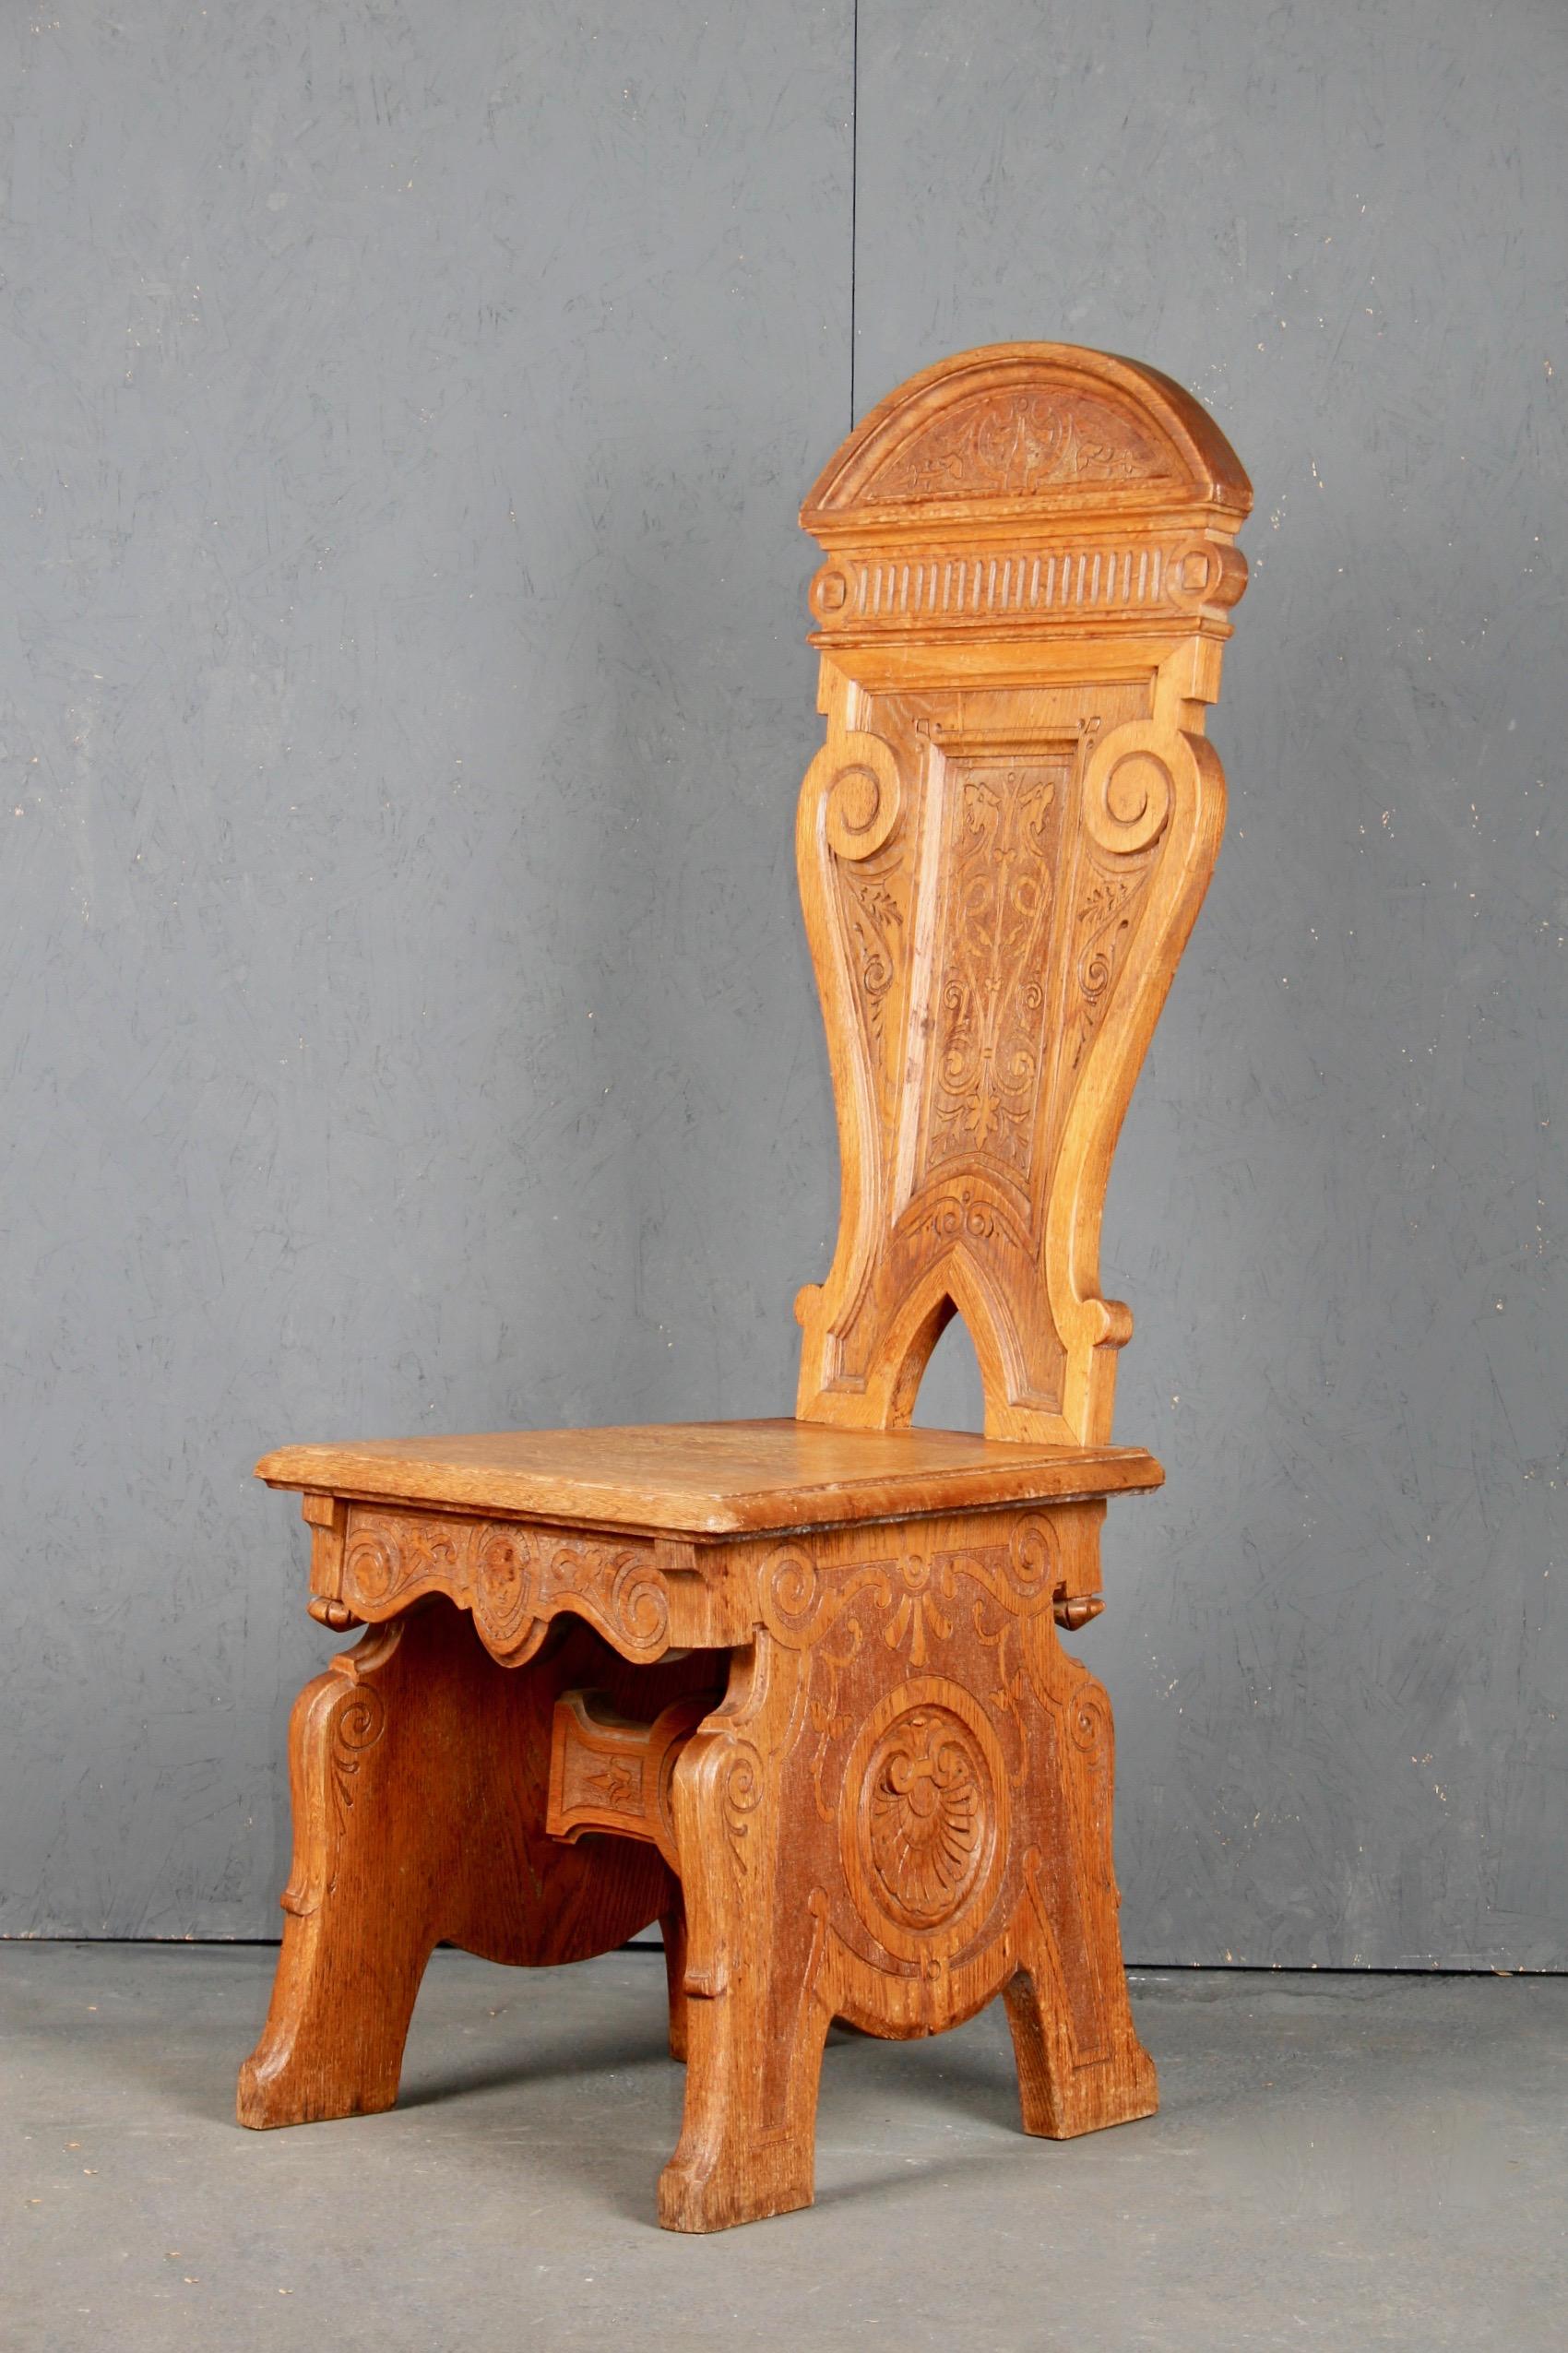 Swedish Folk Art wood chair.